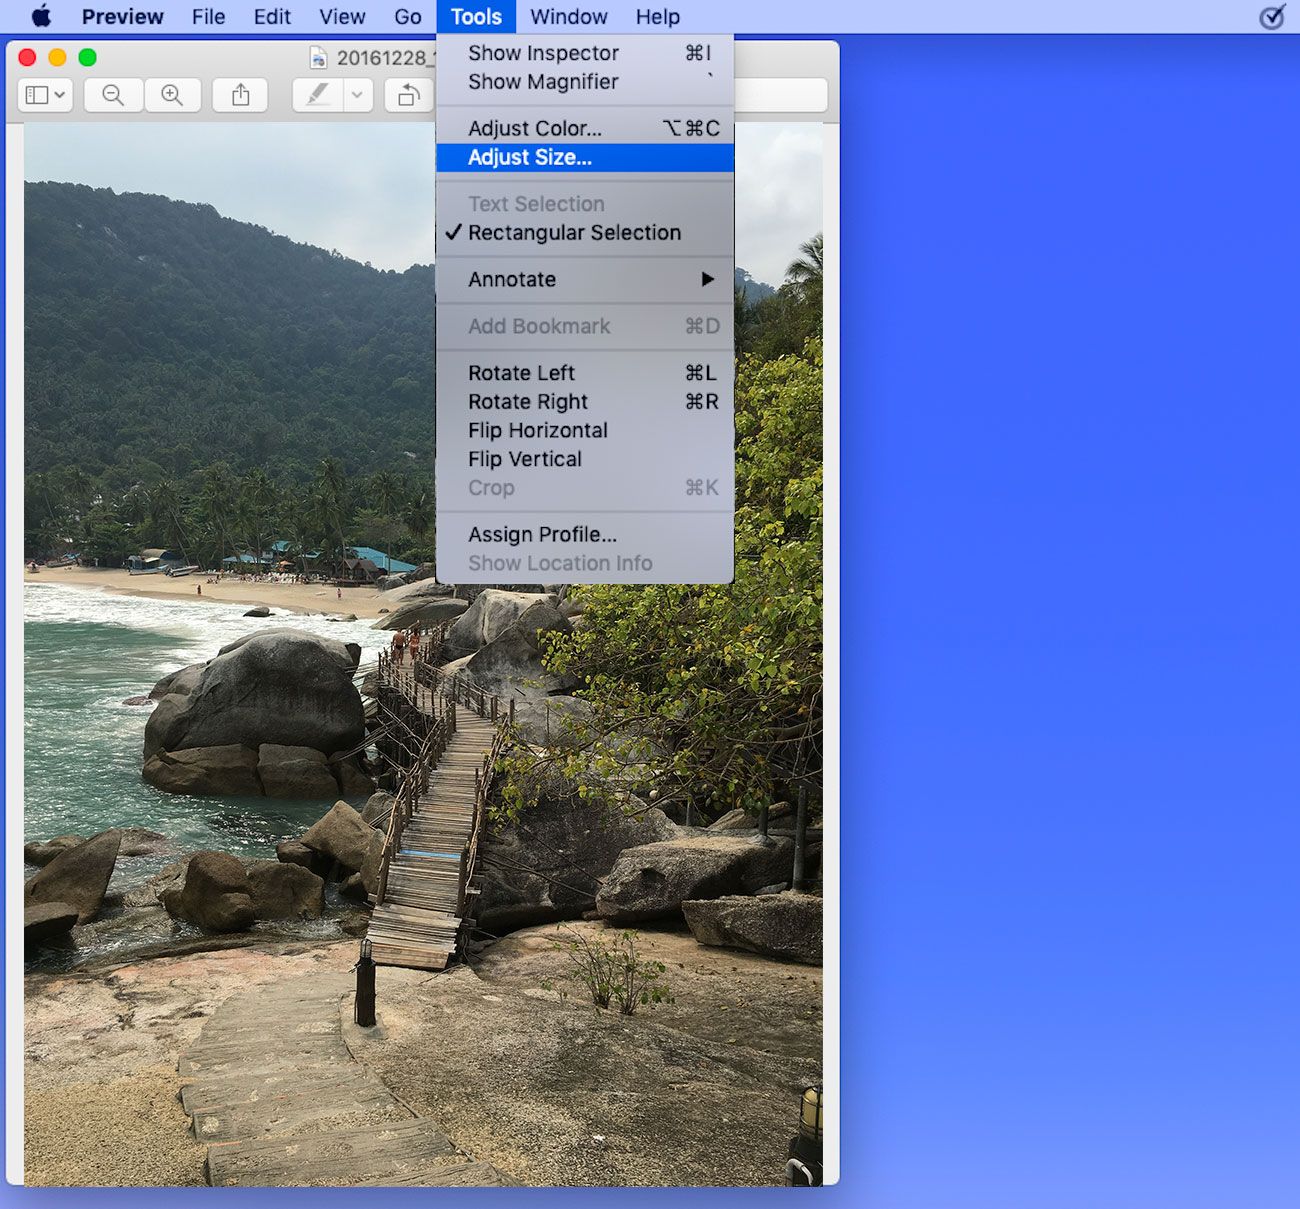 Ajustar el tamaño del archivo de imagen en MAC en MB o KB..